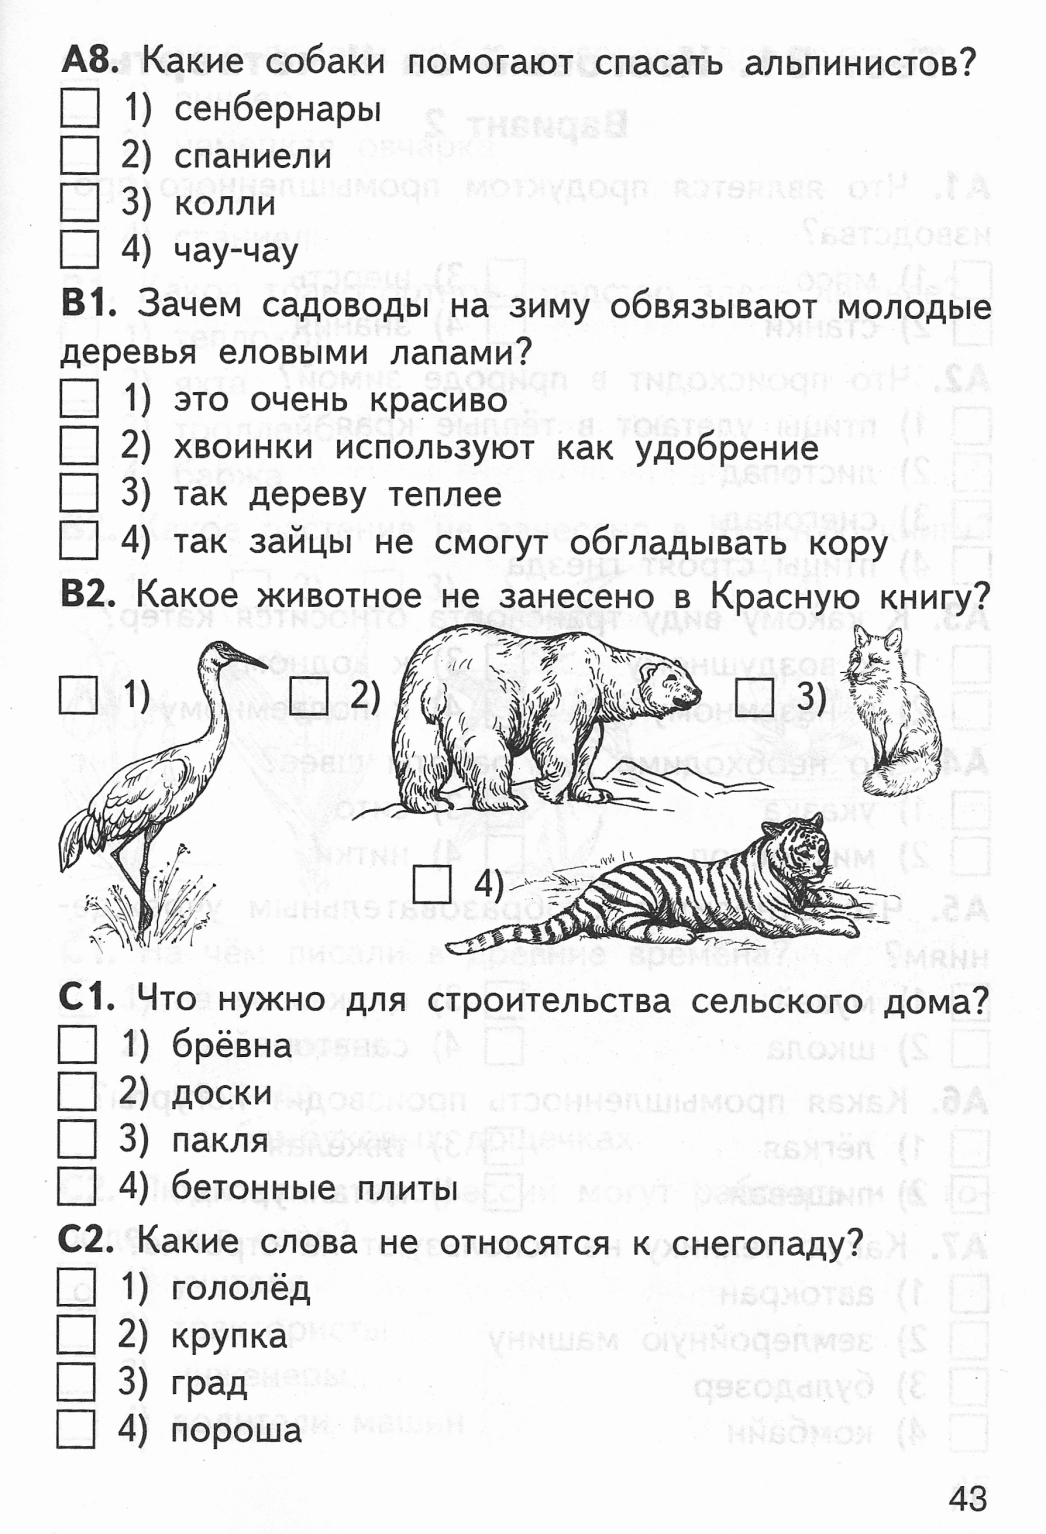 Тест на знание животных онлайн